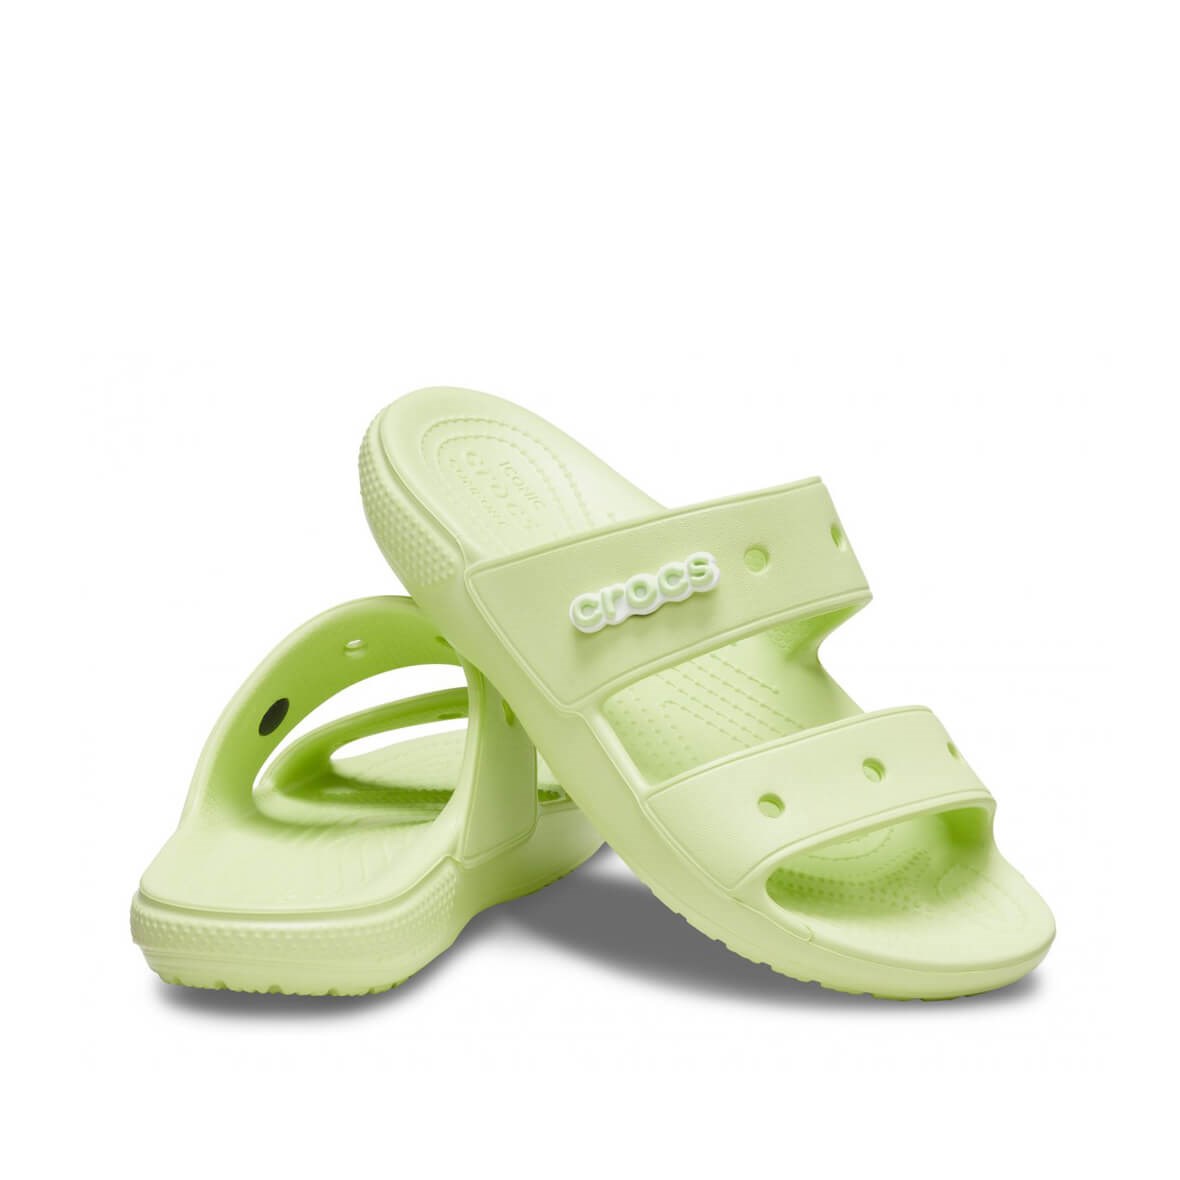 Crocs Classic Crocs Sandal Bayan Terlik - Kereviz Yeşili